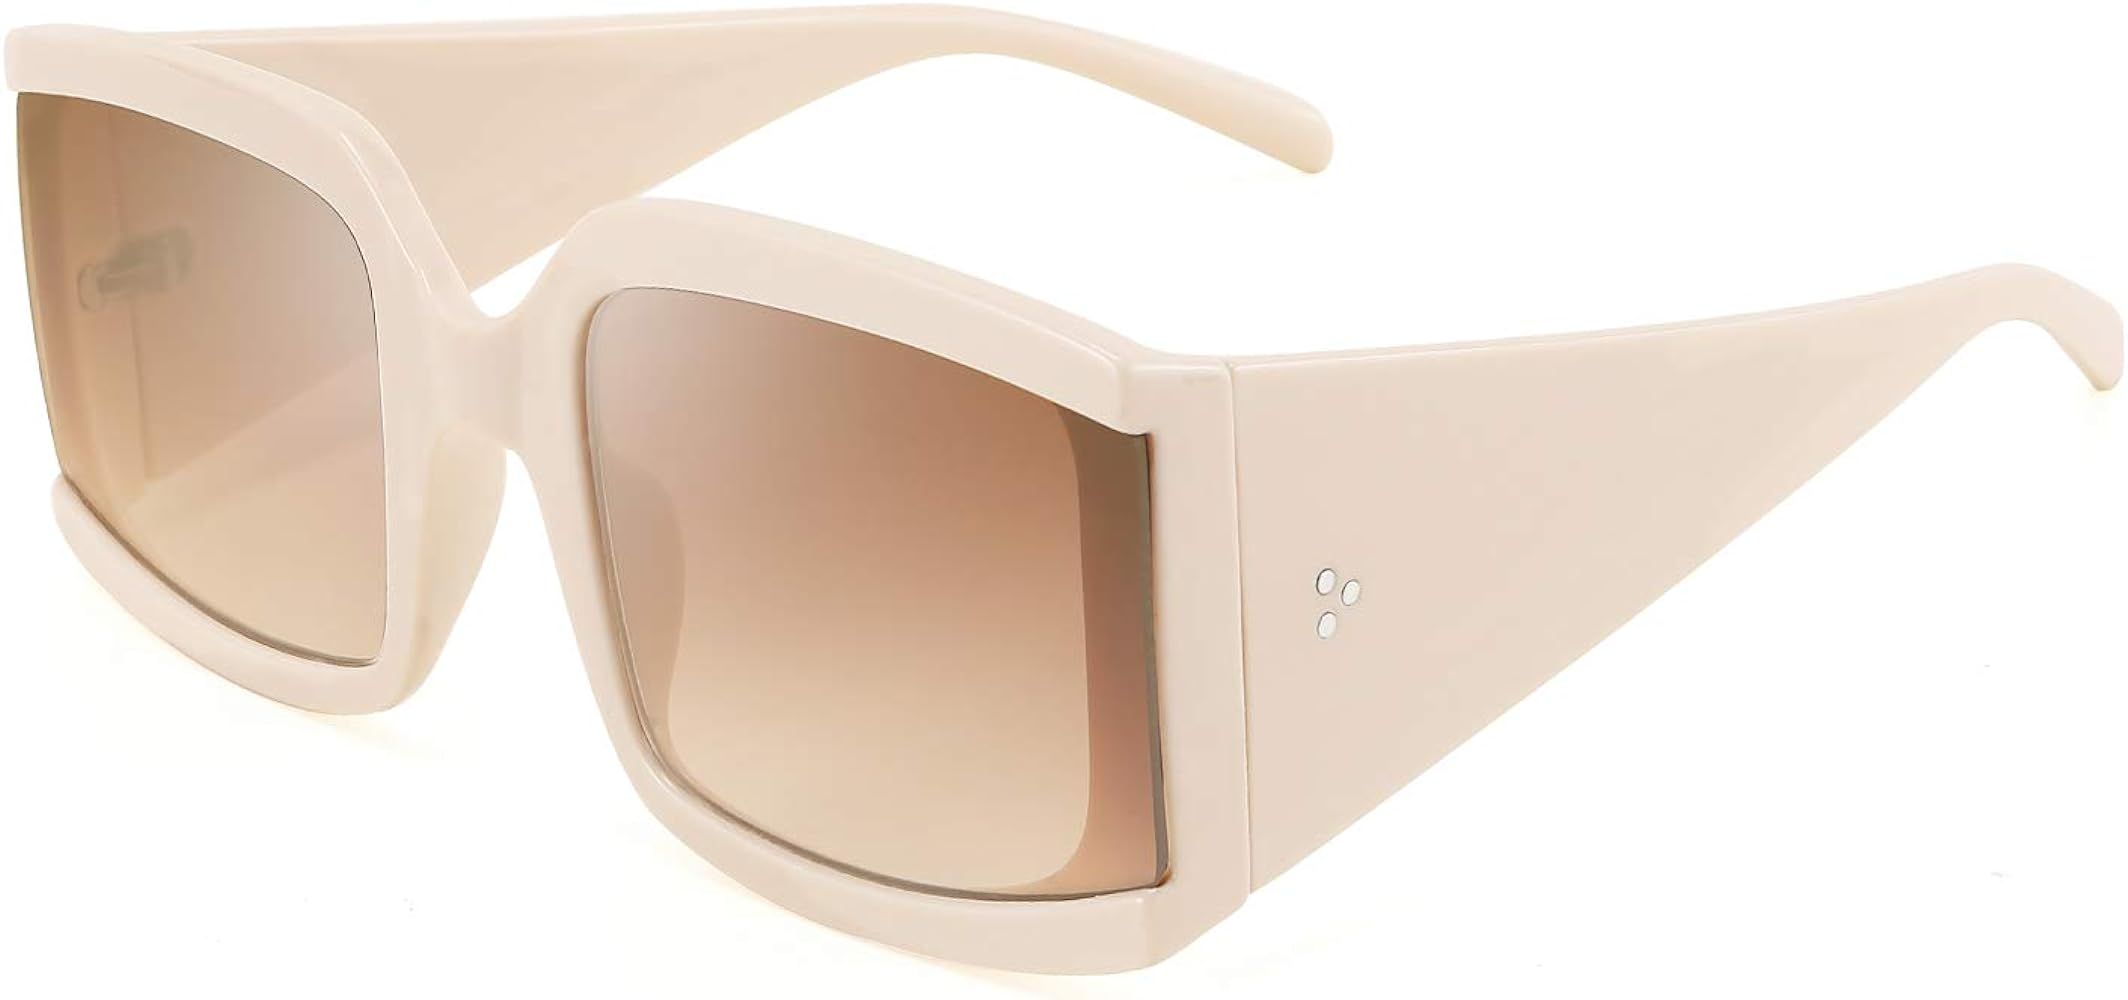 FEISEDY Vintage Shades Oversized Luxury Square Sunglasses Thick Eyewear Frame Men Women B2672 | Amazon (US)